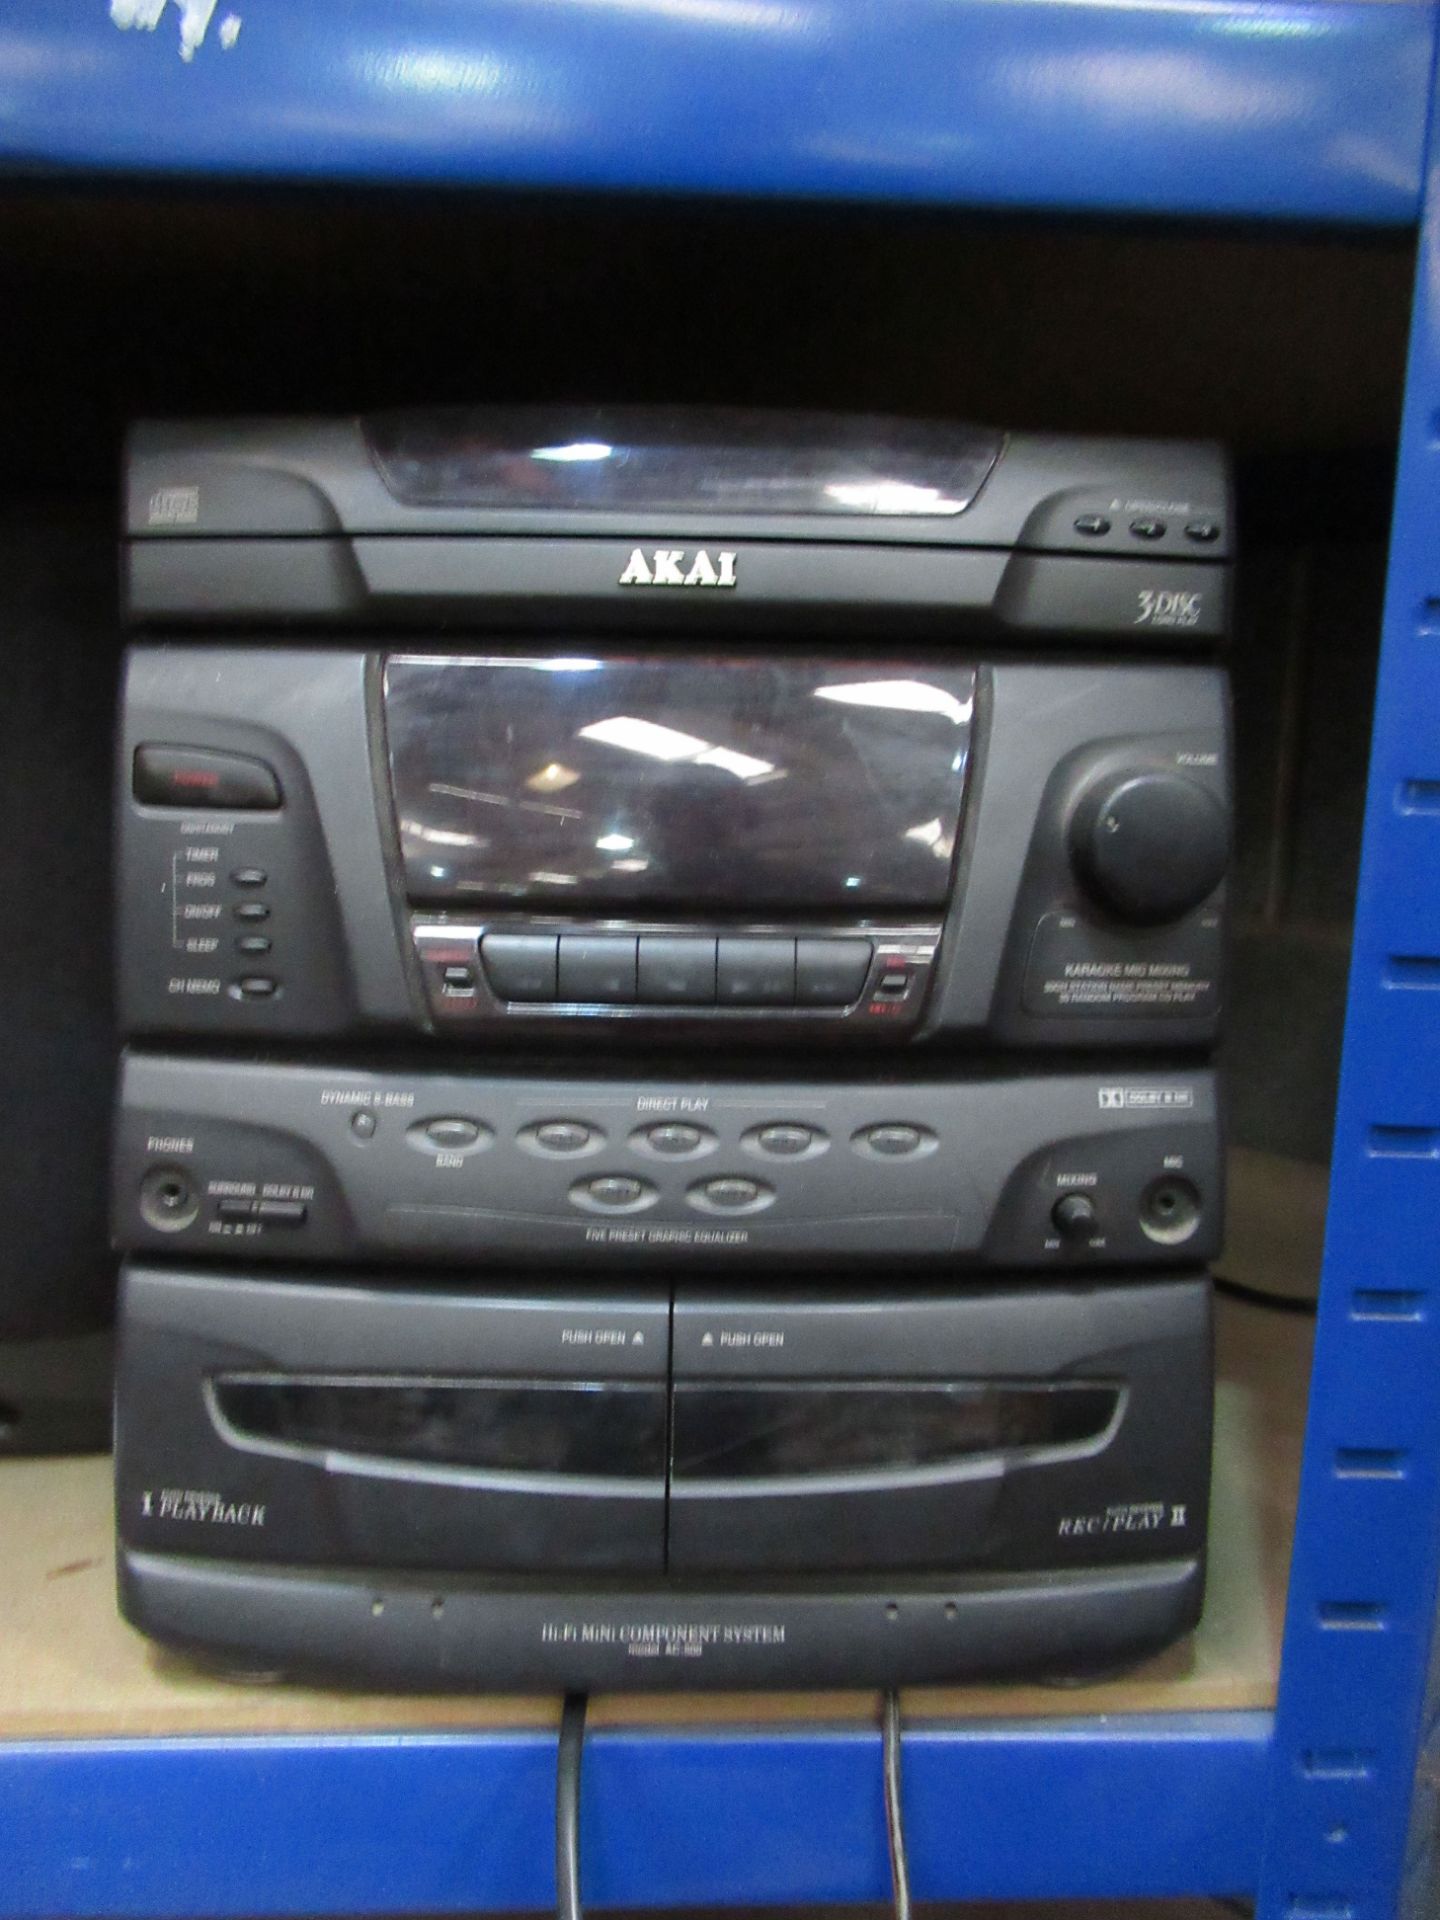 AKAI AC-500 Hi-Fi Mini Component System - Image 2 of 2